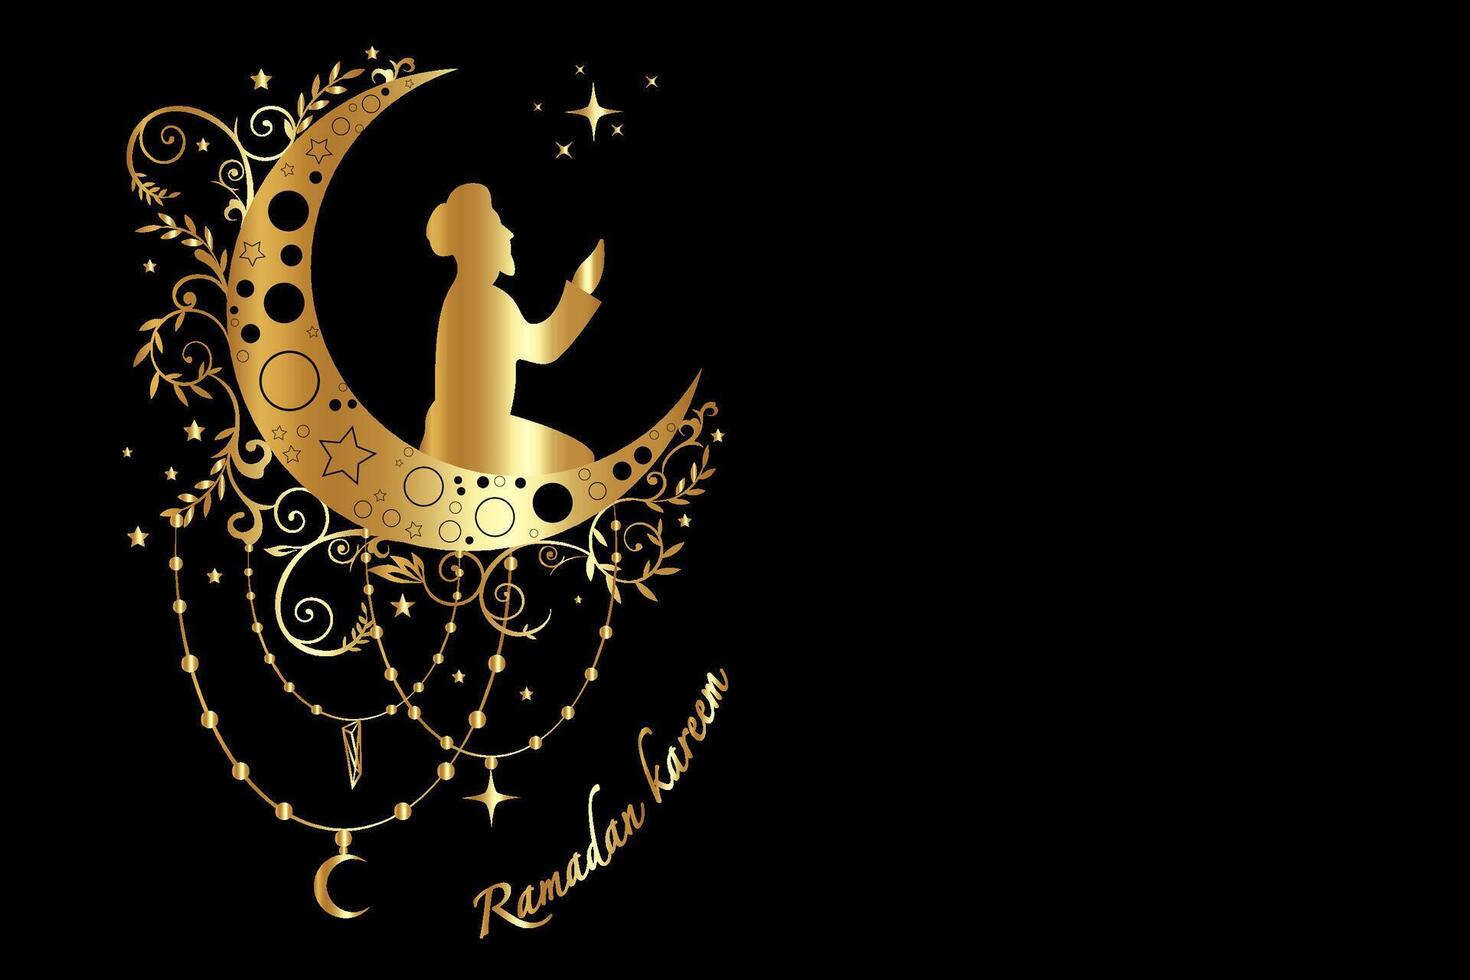 goud silhouet van een moslim bidden Aan cessie maan, Ramadan concept in boho stijl. luxe Islamitisch symbool kan worden gebruikt voor de maand van Ramadan voor logo, website en poster ontwerpen. vector